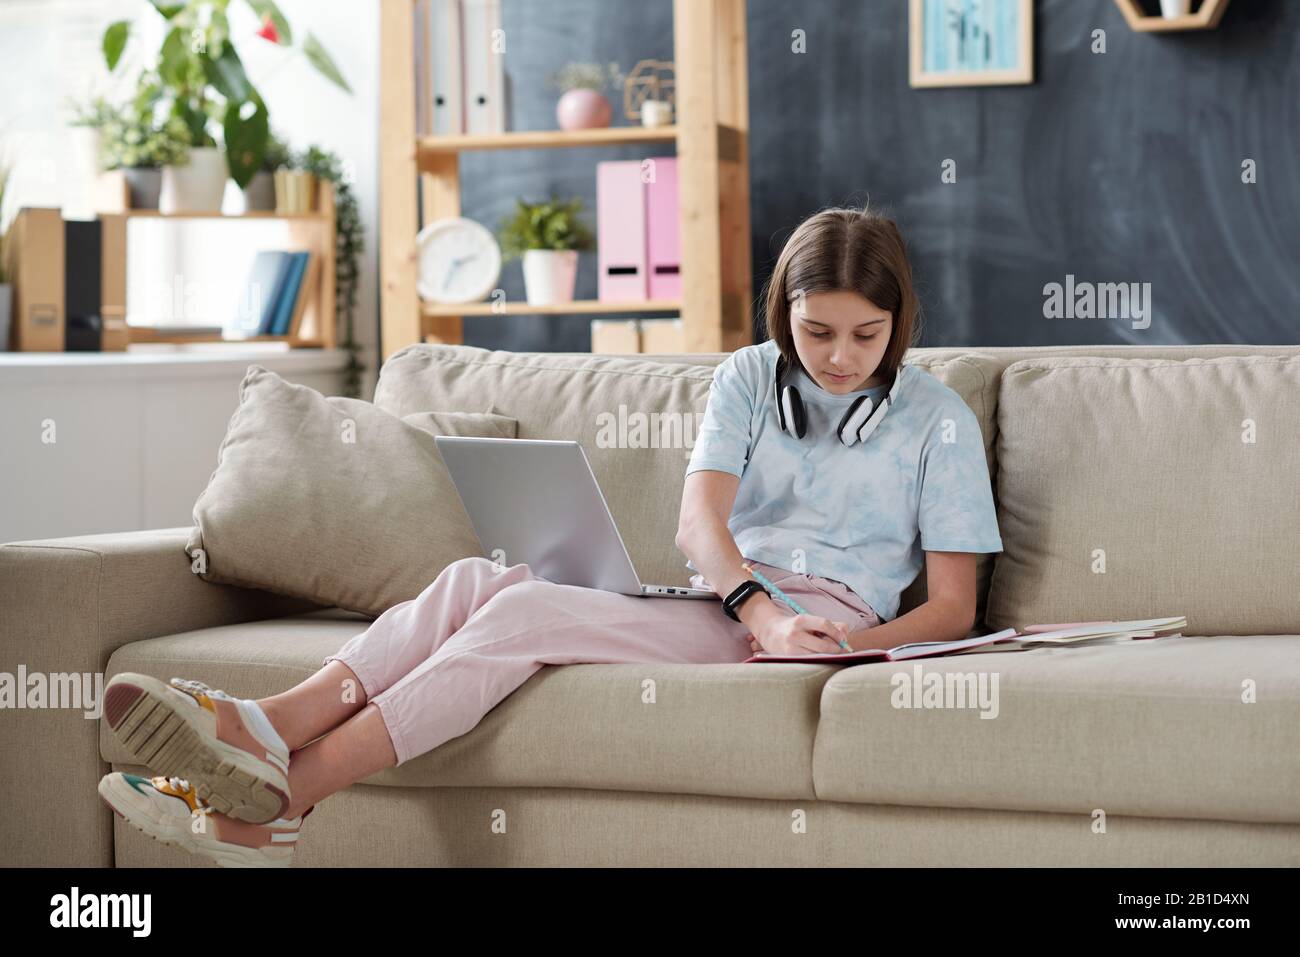 Une adolescente avec écouteurs sur le cou utilisant des ressources Internet sur un ordinateur portable tout en faisant des devoirs dans le salon Banque D'Images